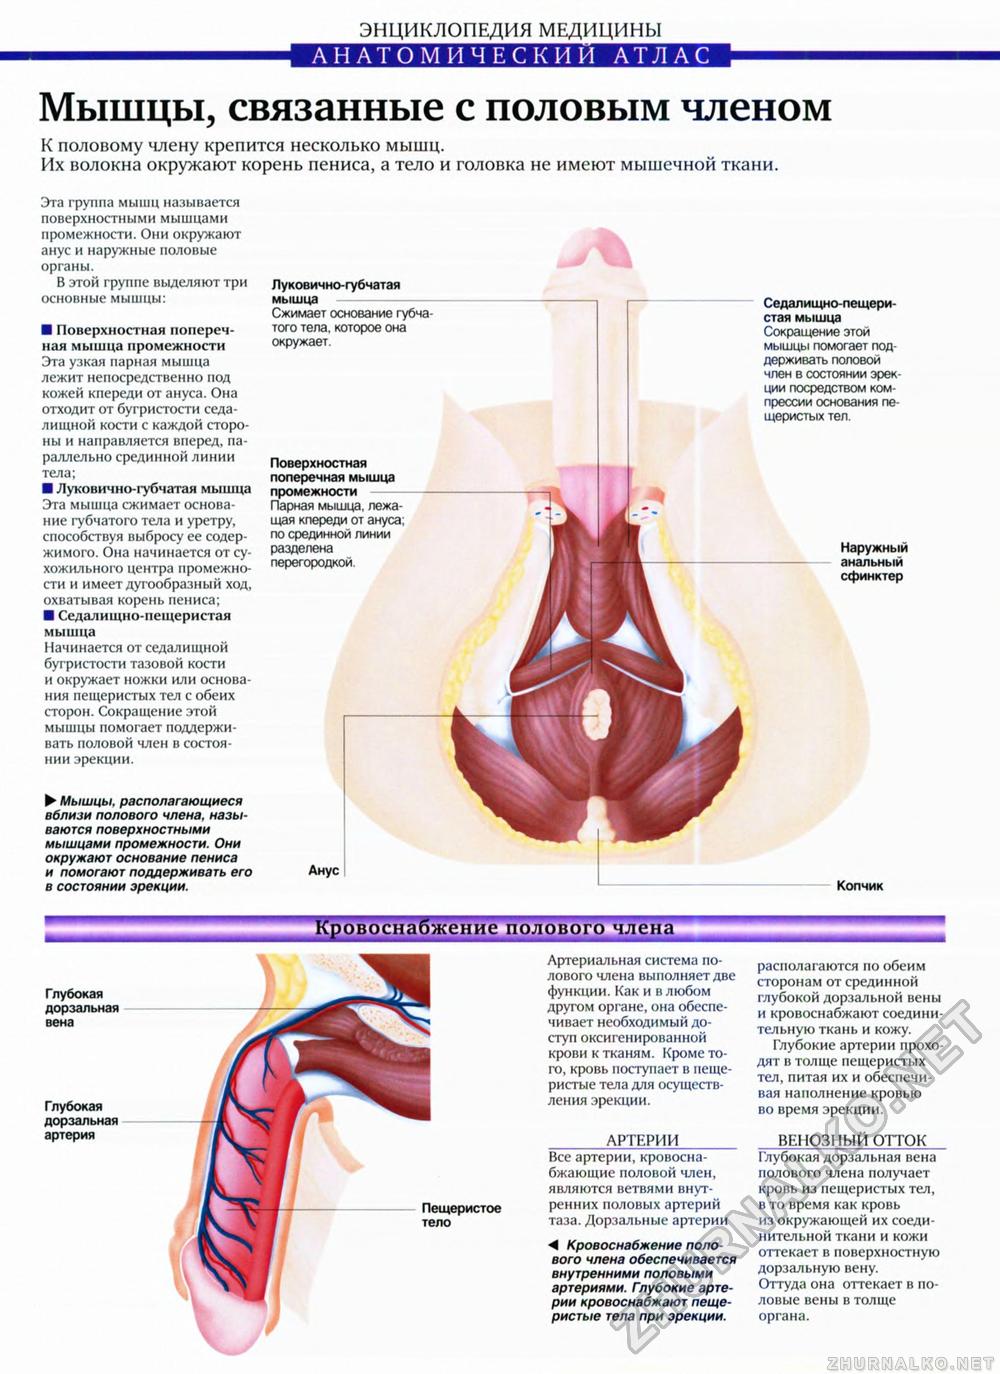 какие мышцы сокращаются во время оргазма фото 8